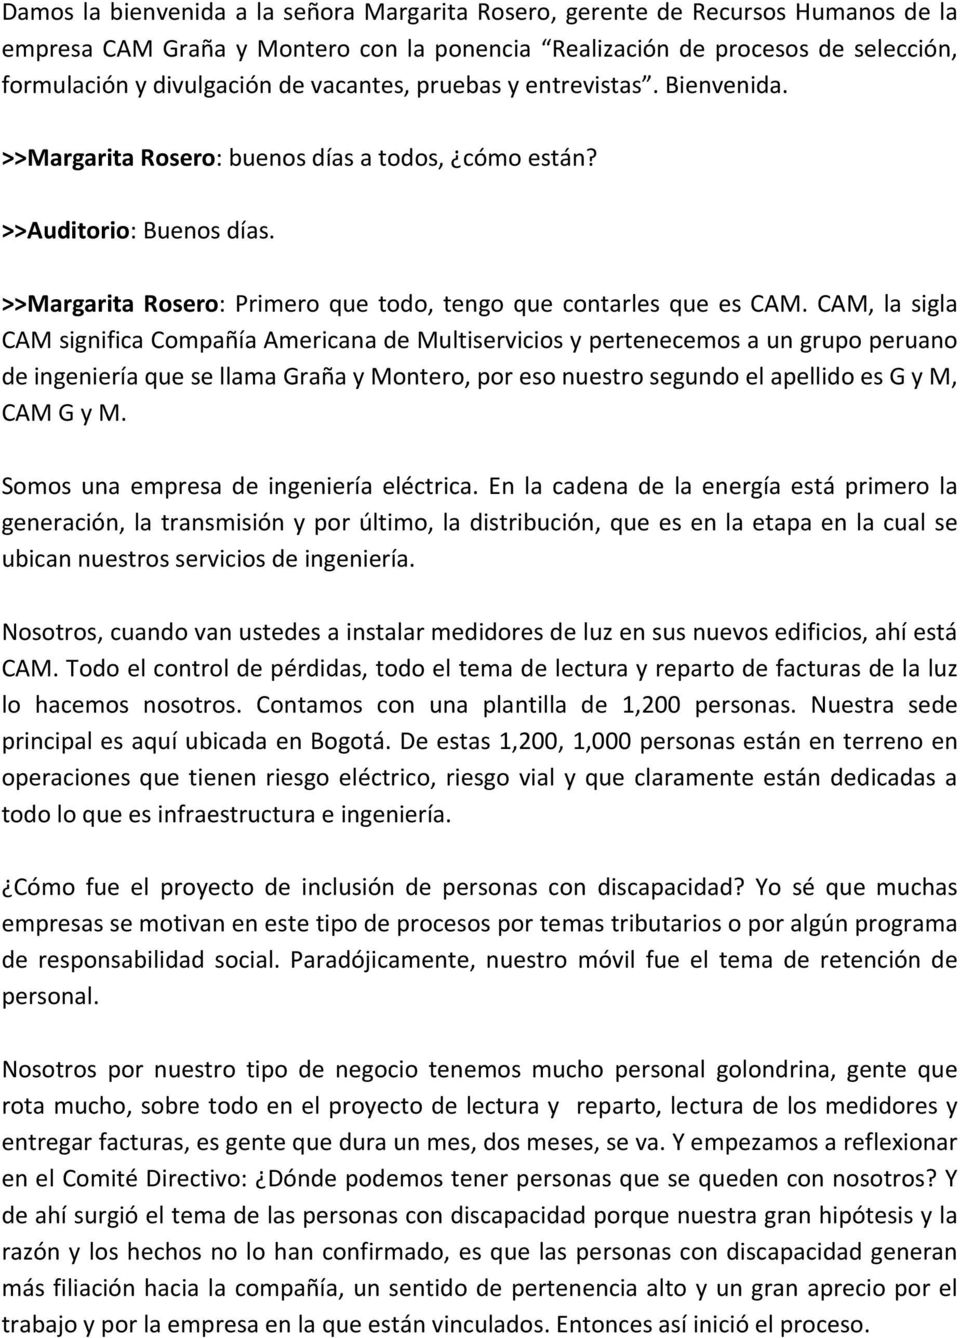 CAM, la sigla CAM significa Compañía Americana de Multiservicios y pertenecemos a un grupo peruano de ingeniería que se llama Graña y Montero, por eso nuestro segundo el apellido es G y M, CAM G y M.